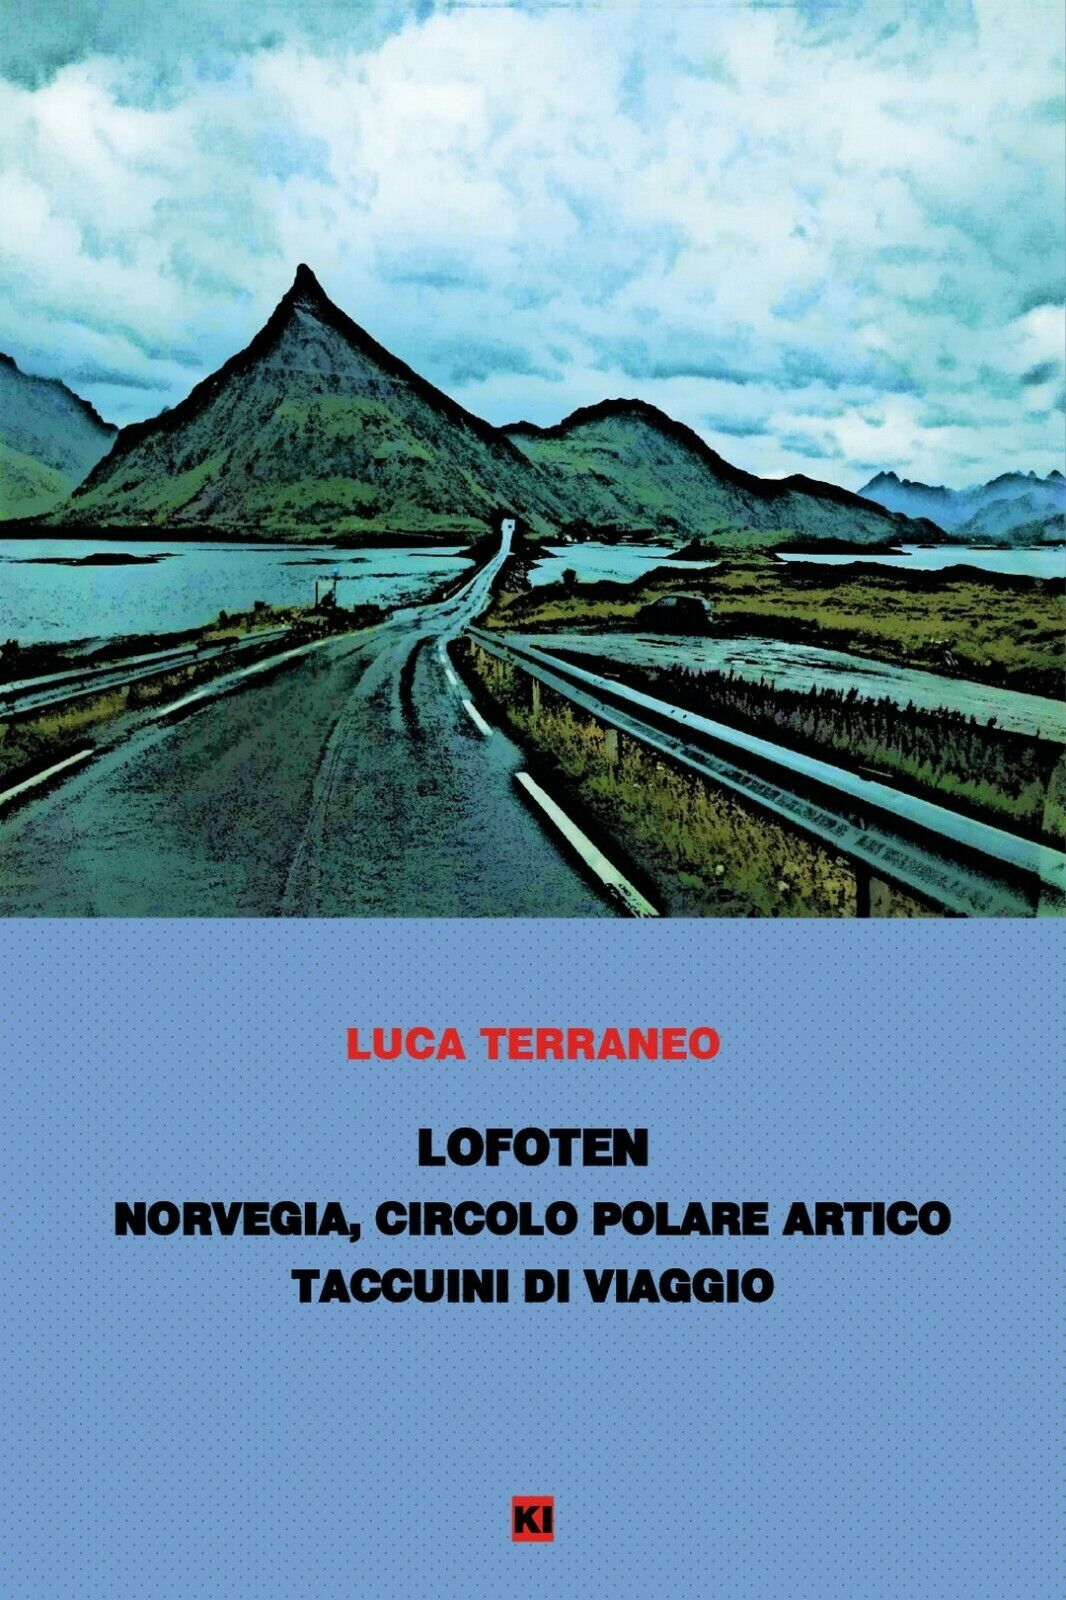 Lofoten - taccuini di viaggio  di Luca Terraneo,  2020,  Youcanprint